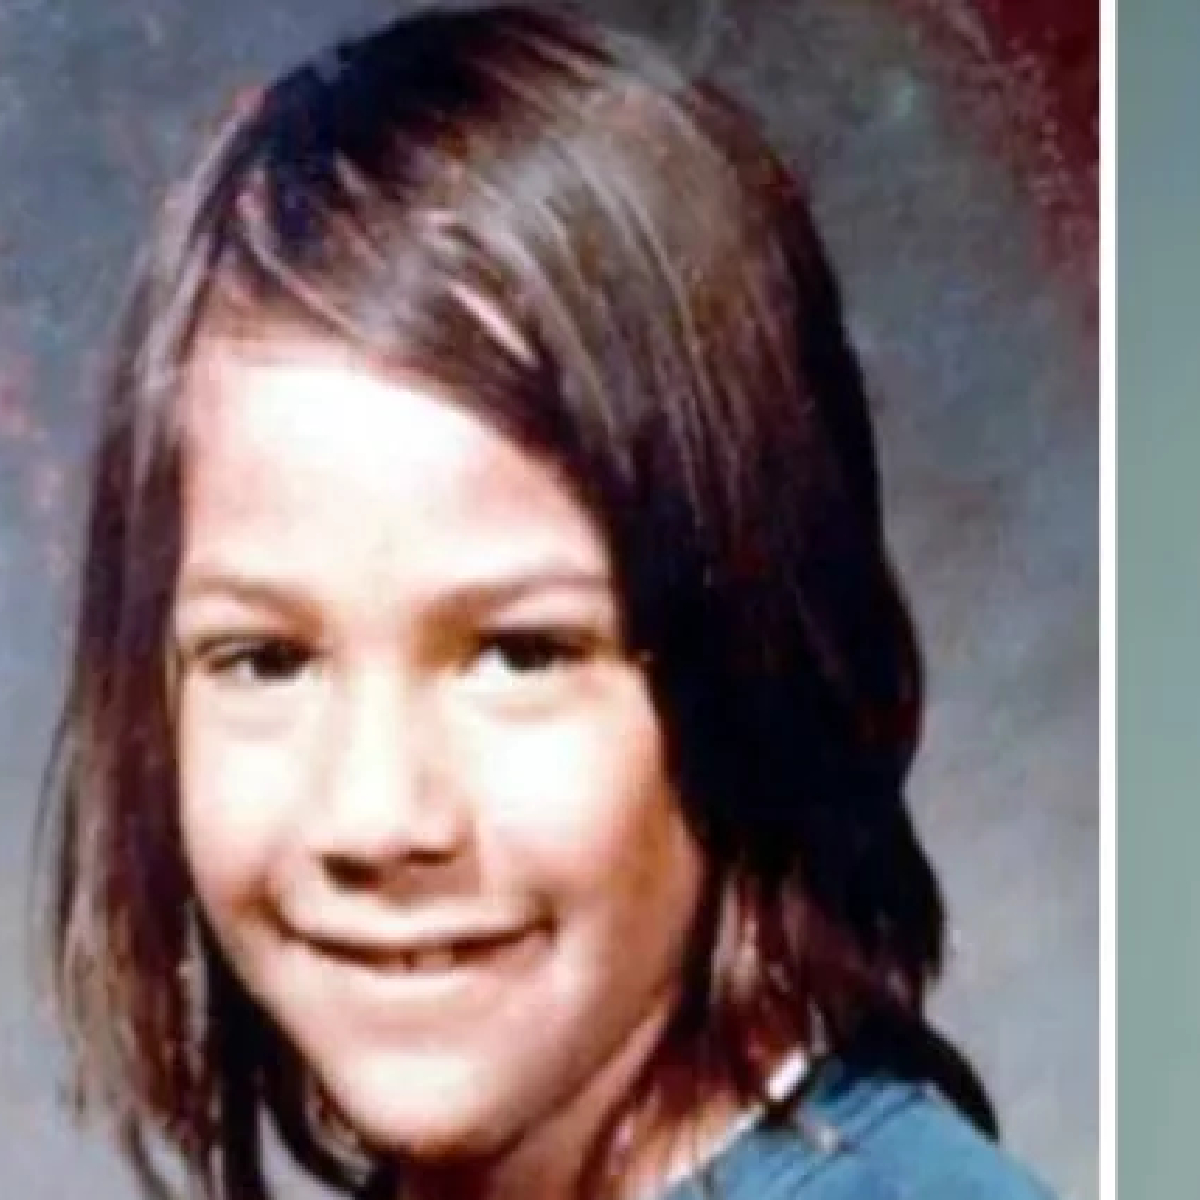 Childhood photo of Keanu Reeves